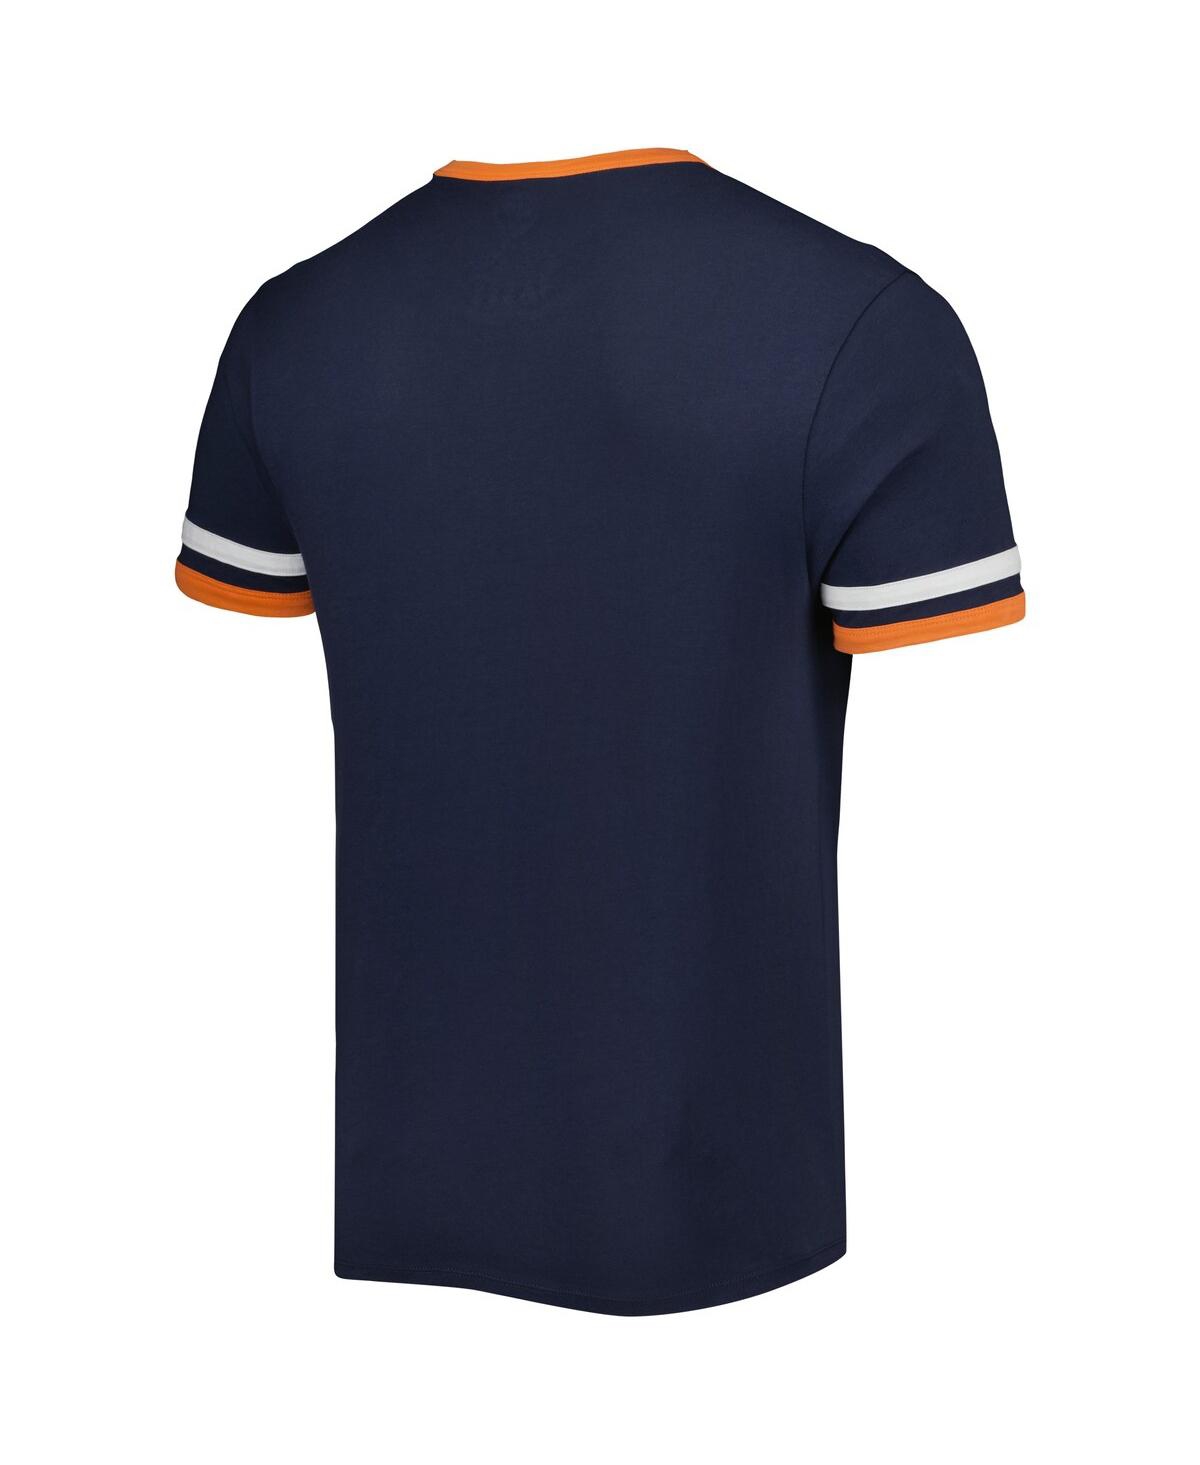 Shop 47 Brand Men's '47 Navy Auburn Tigers Otis Ringer T-shirt